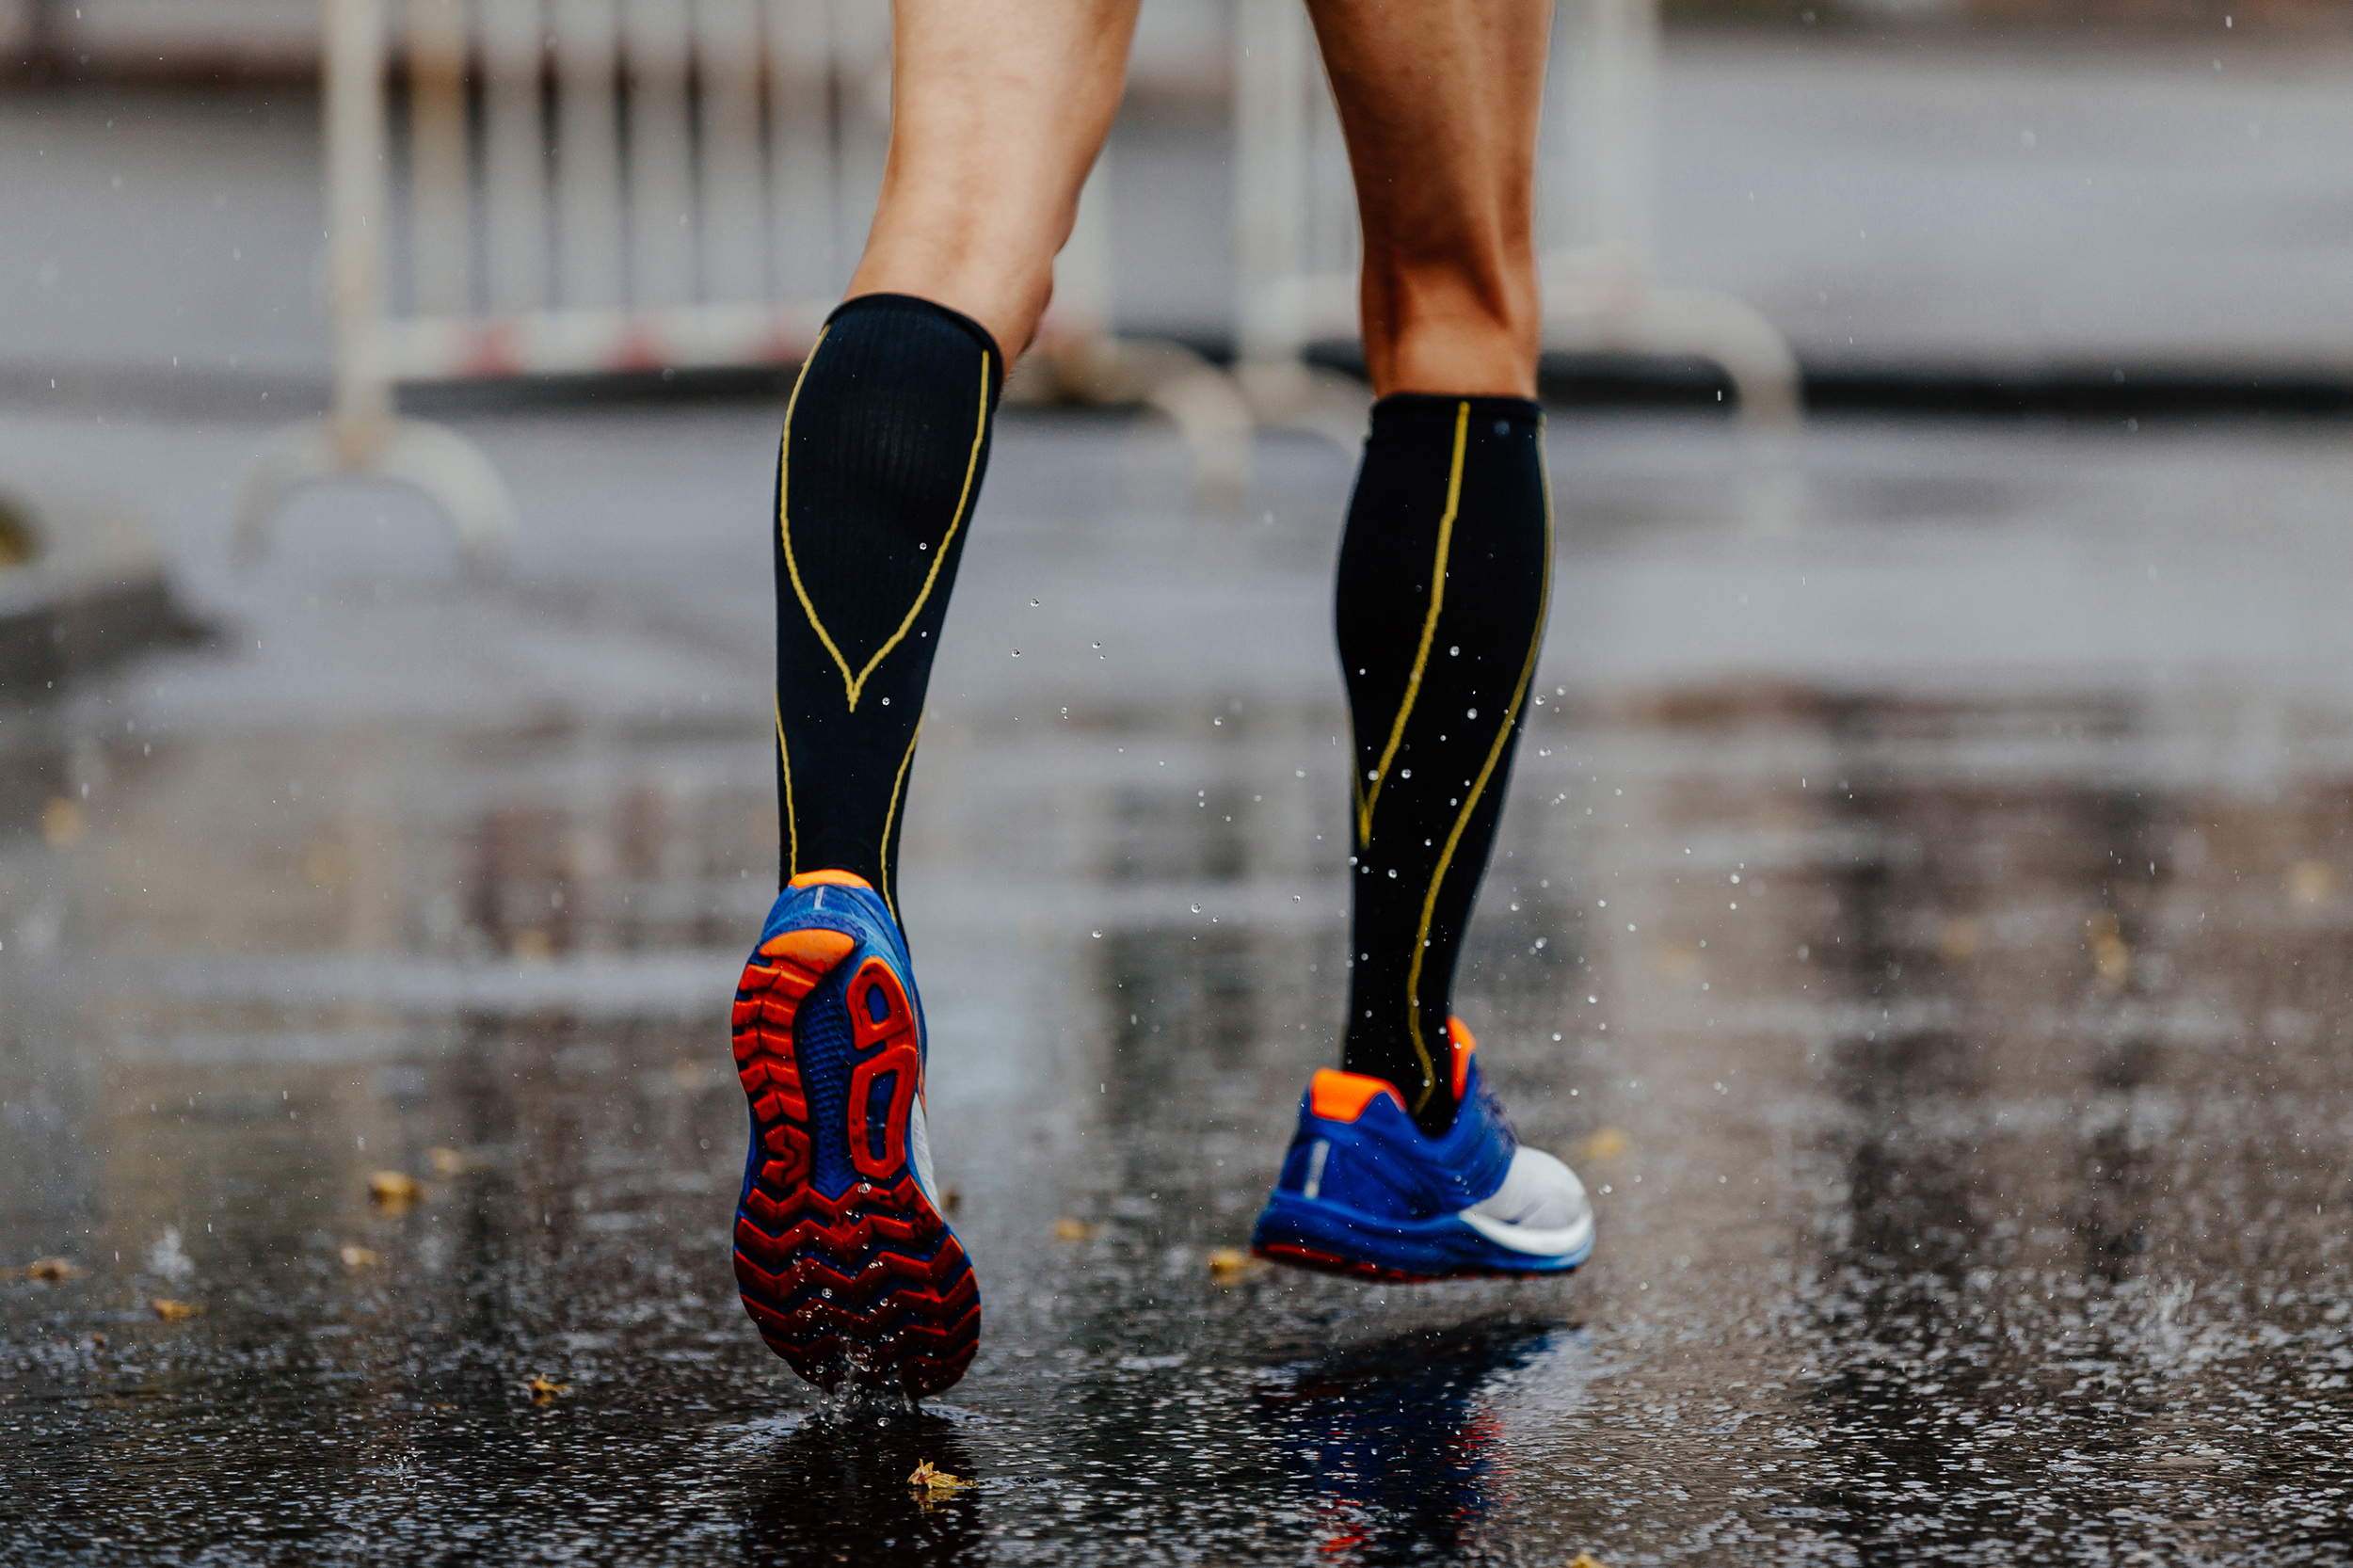 Chaussette de compression pour le running : avantages et inconvénients ?